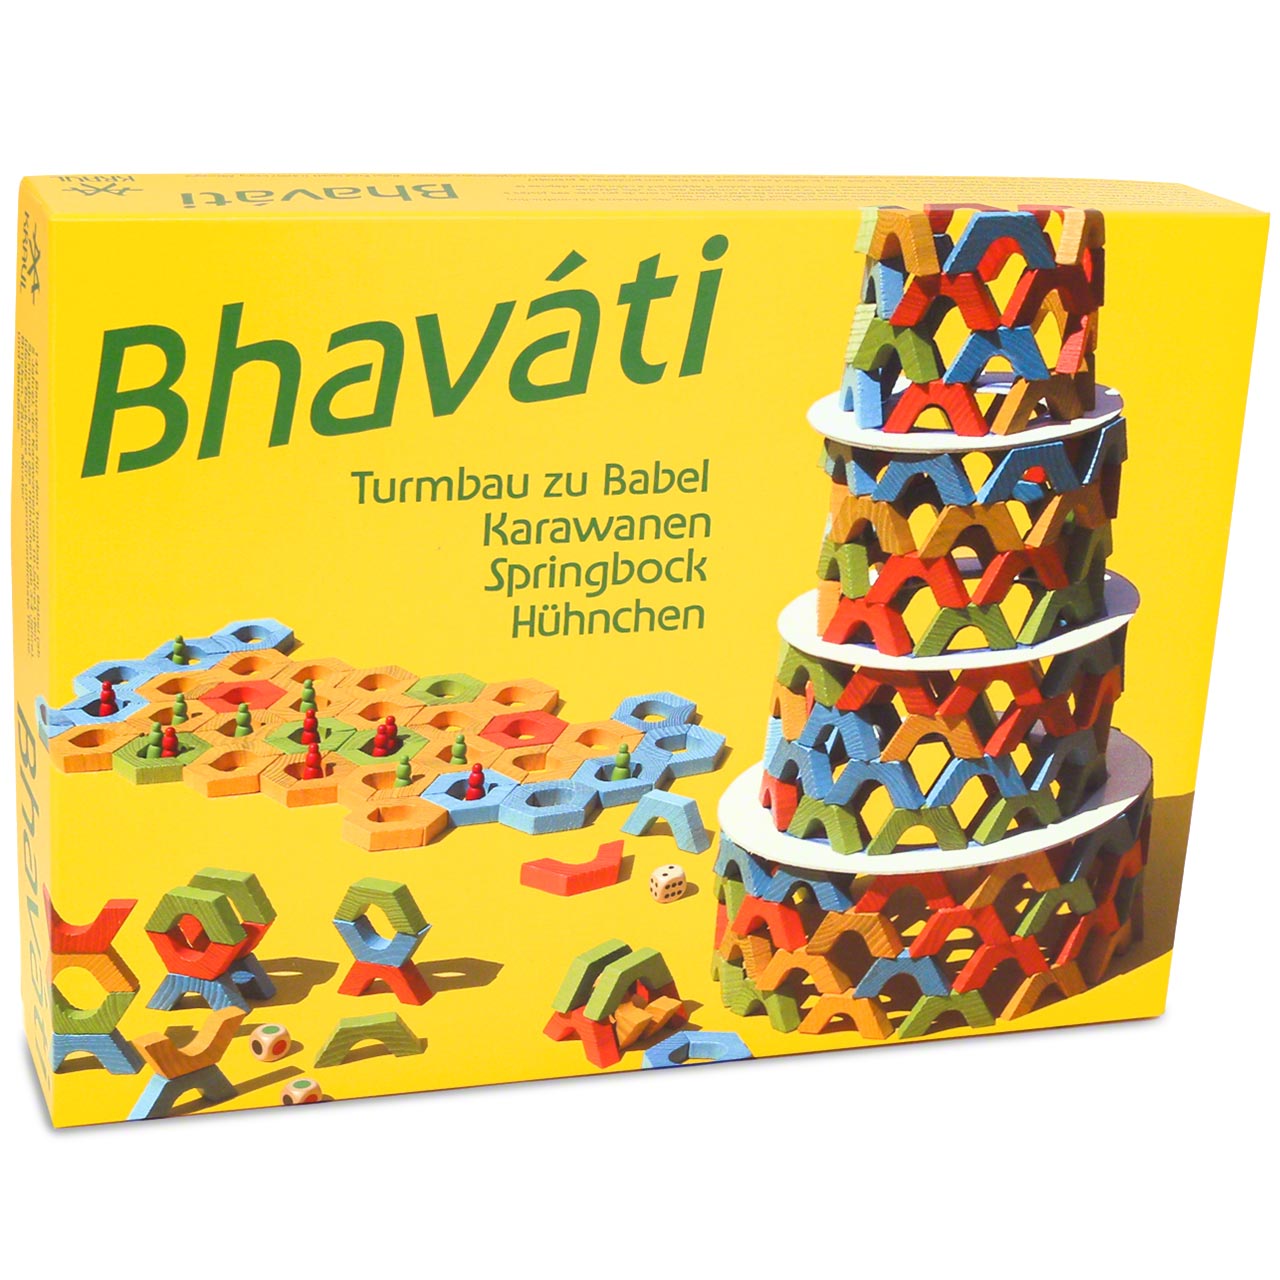 BHAVATI